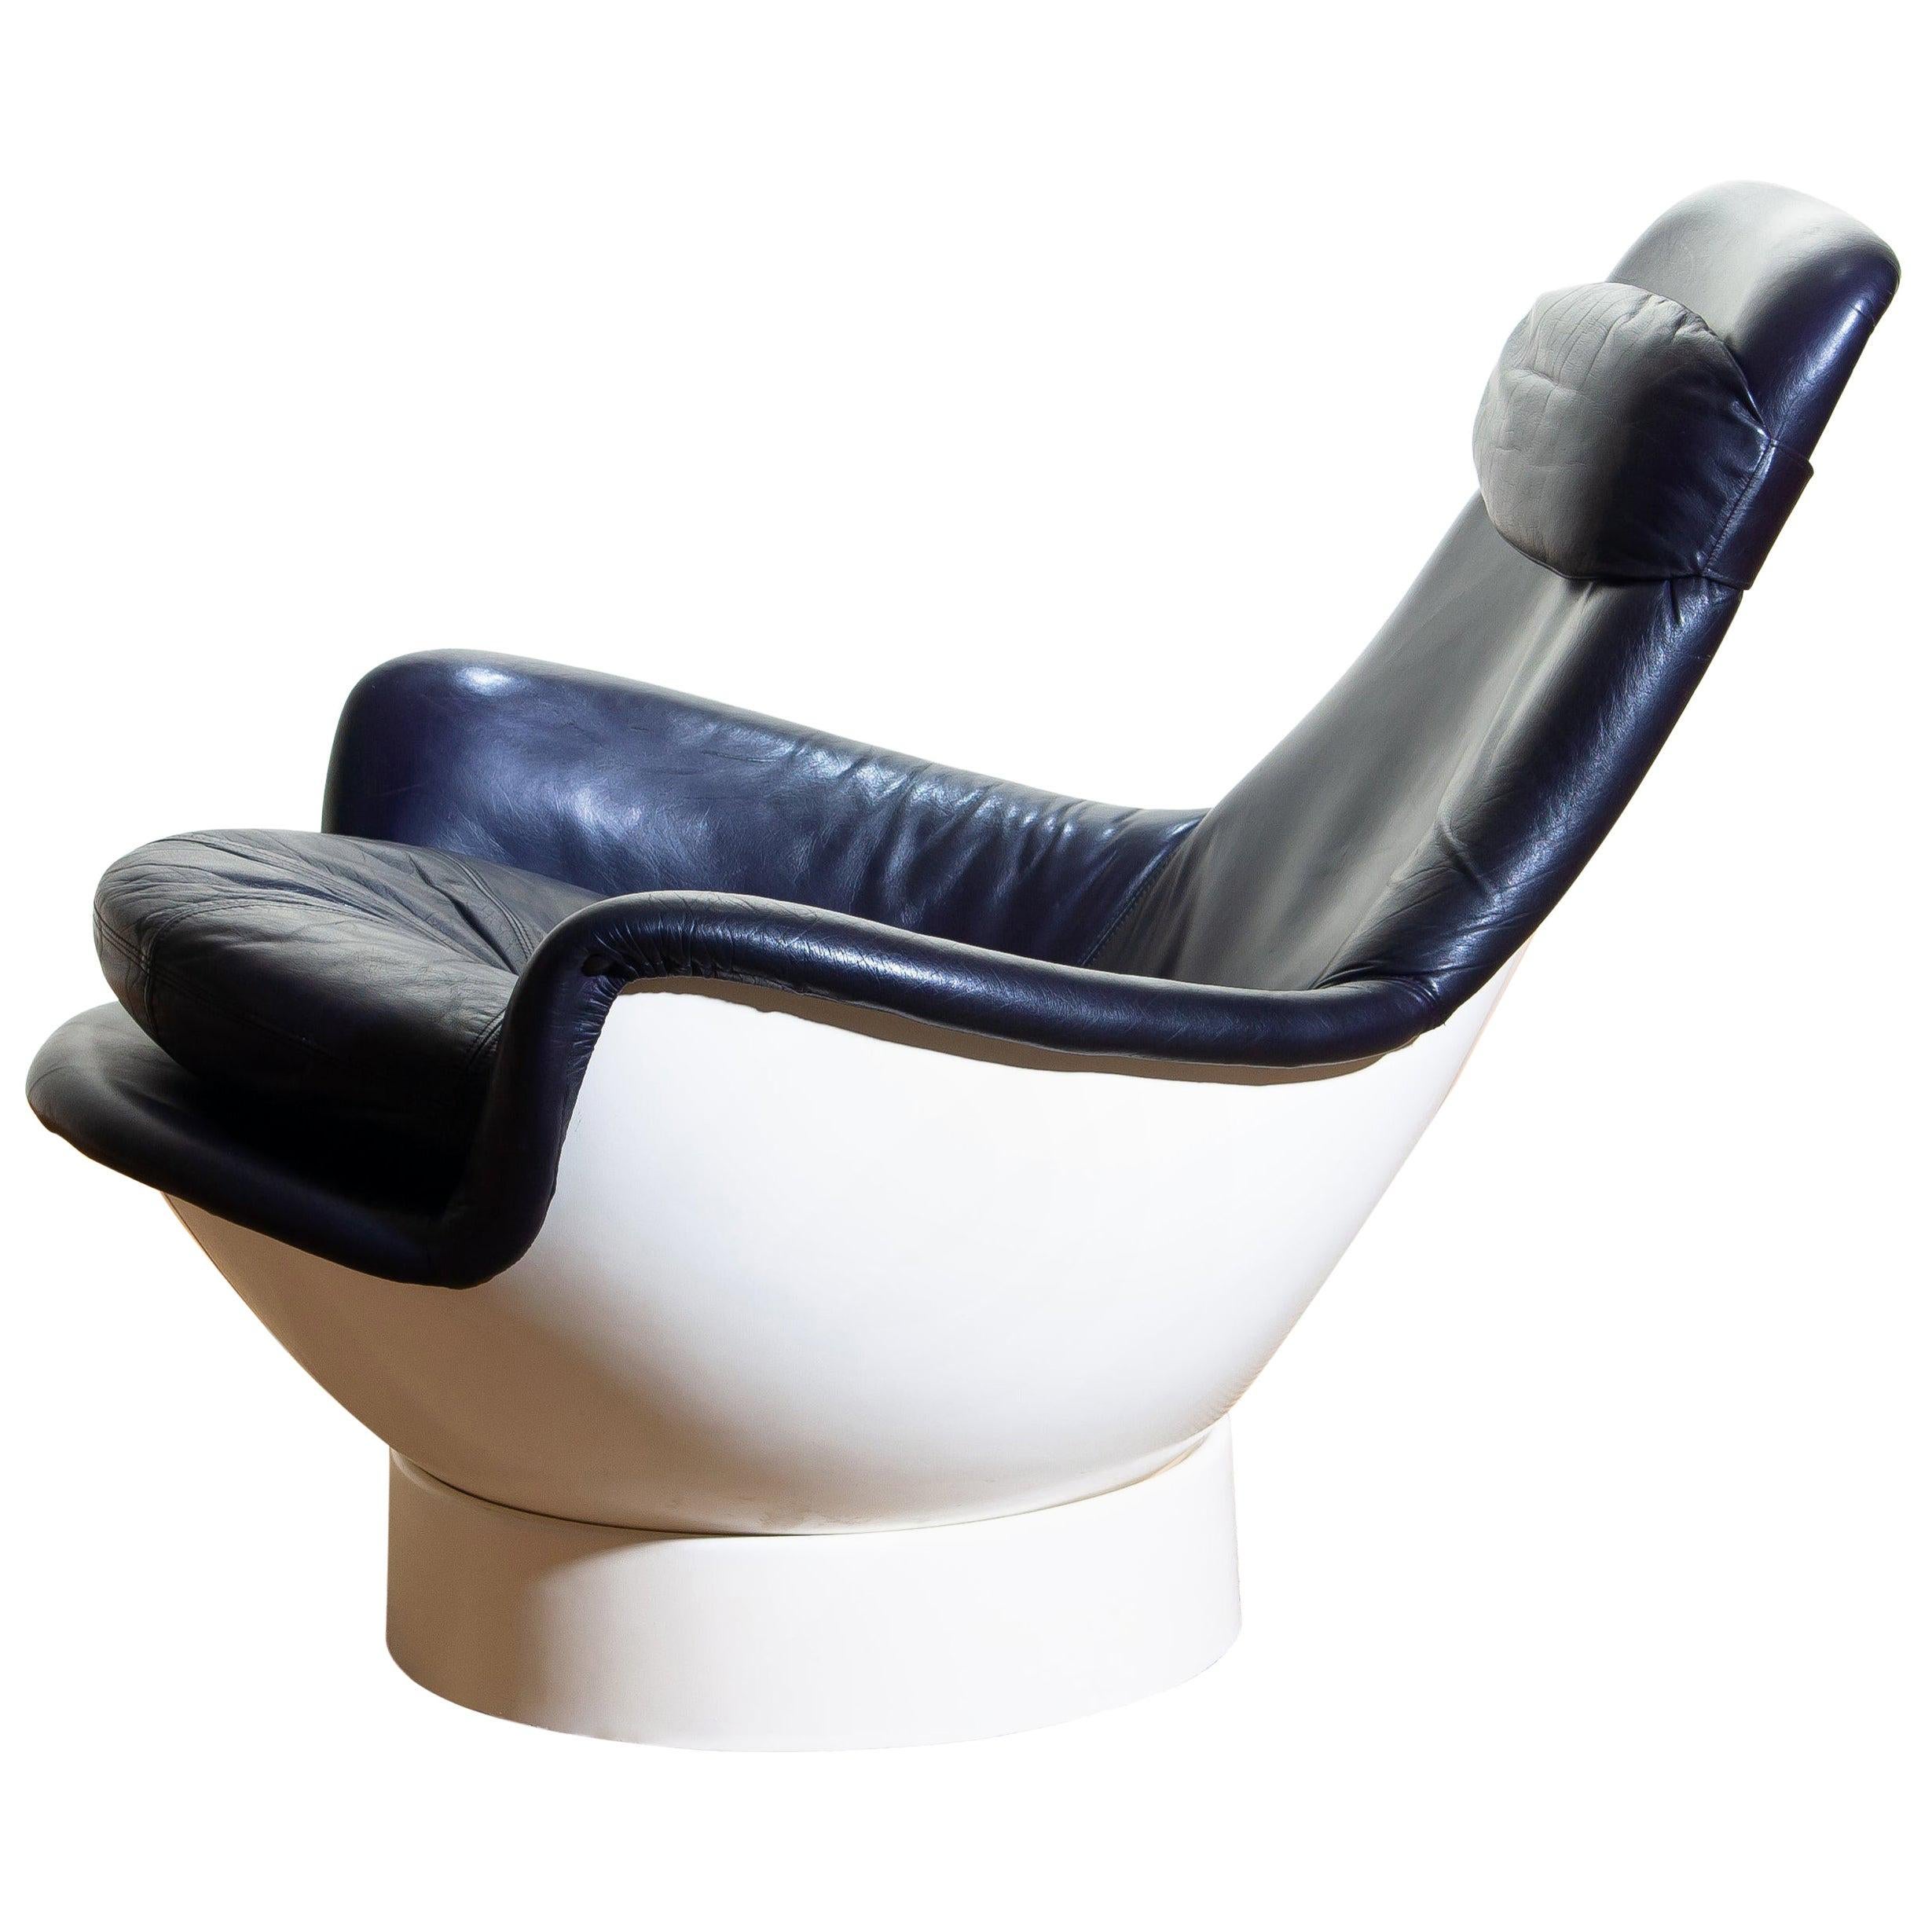 Wunderschöner Space Age Lounge Chair von Risto Halme für Peem Oy aus Fiberglas, gepolstert mit dunkelviolettem Leder. Hergestellt in Finnland, 1970er Jahre.
Mit dem Namen 